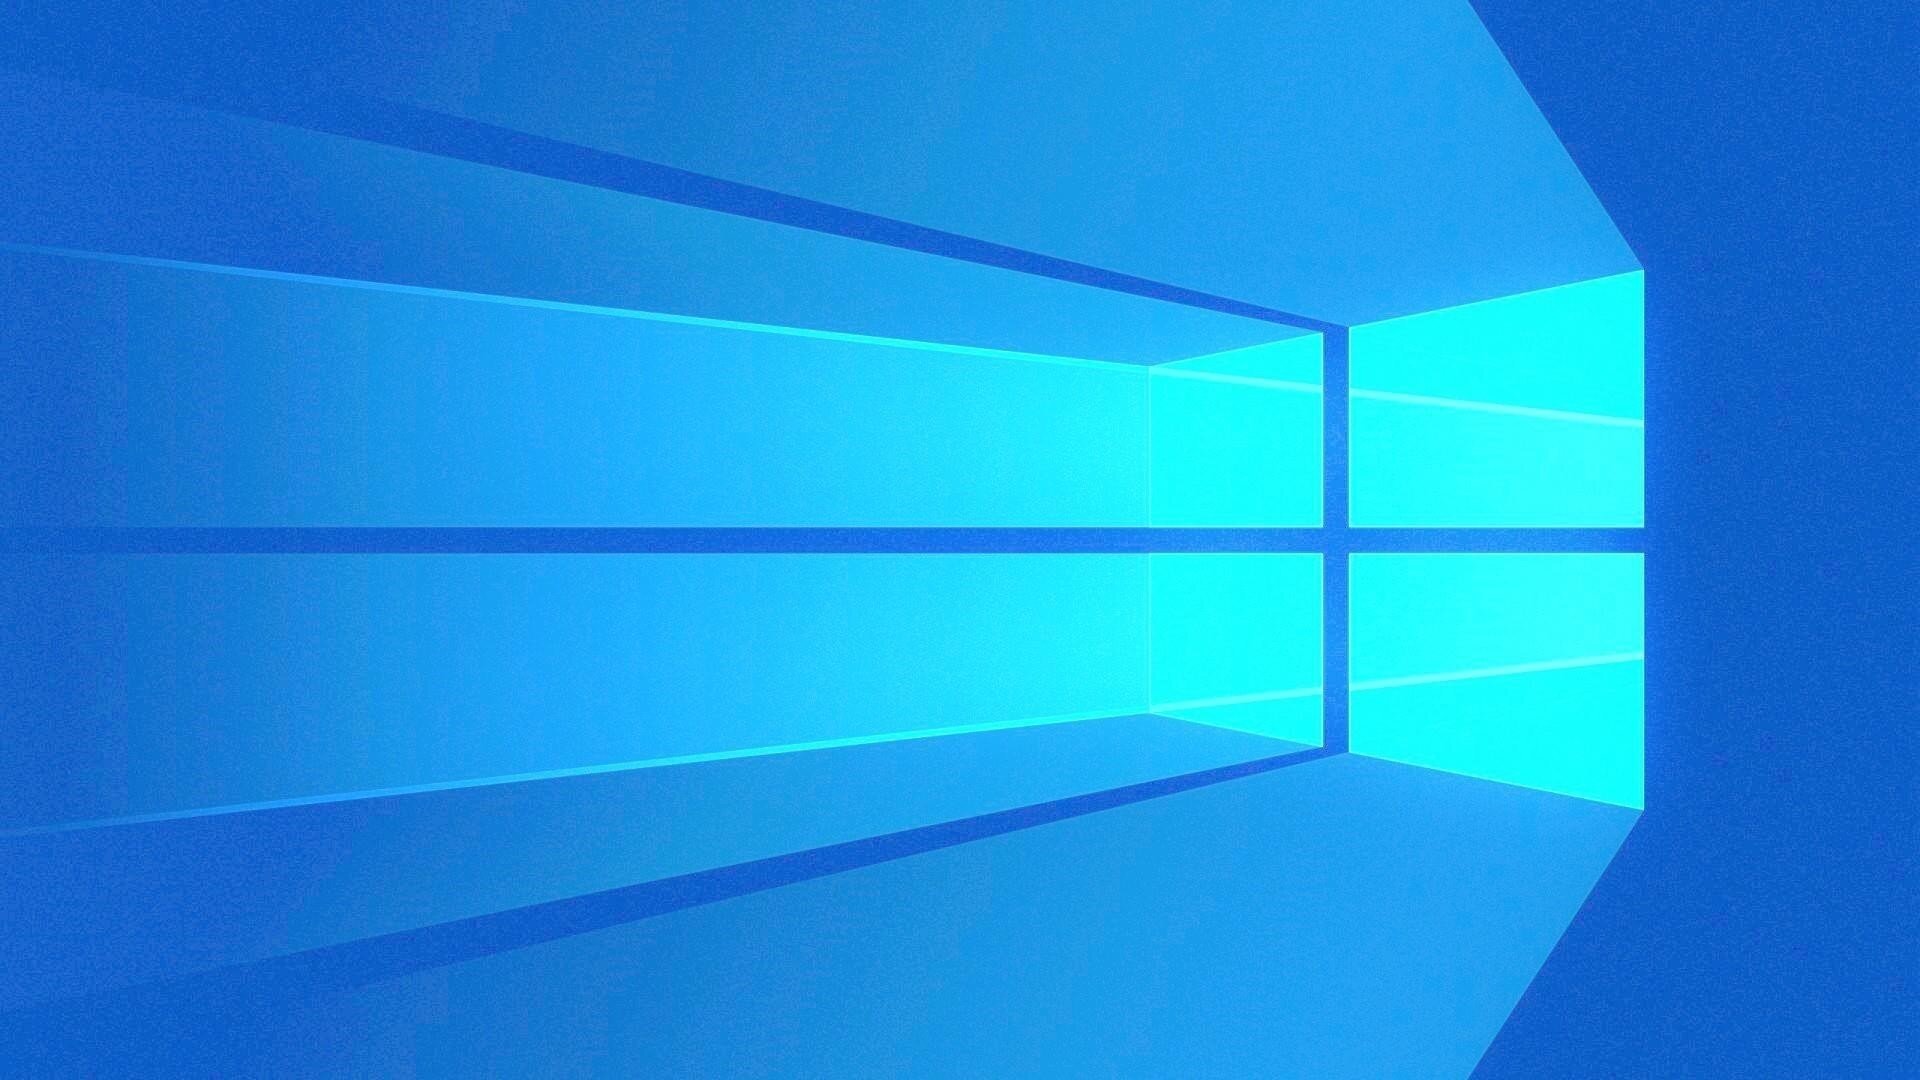 Компания Microsoft показала новый дизайн Windows&nbsp;10&nbsp;